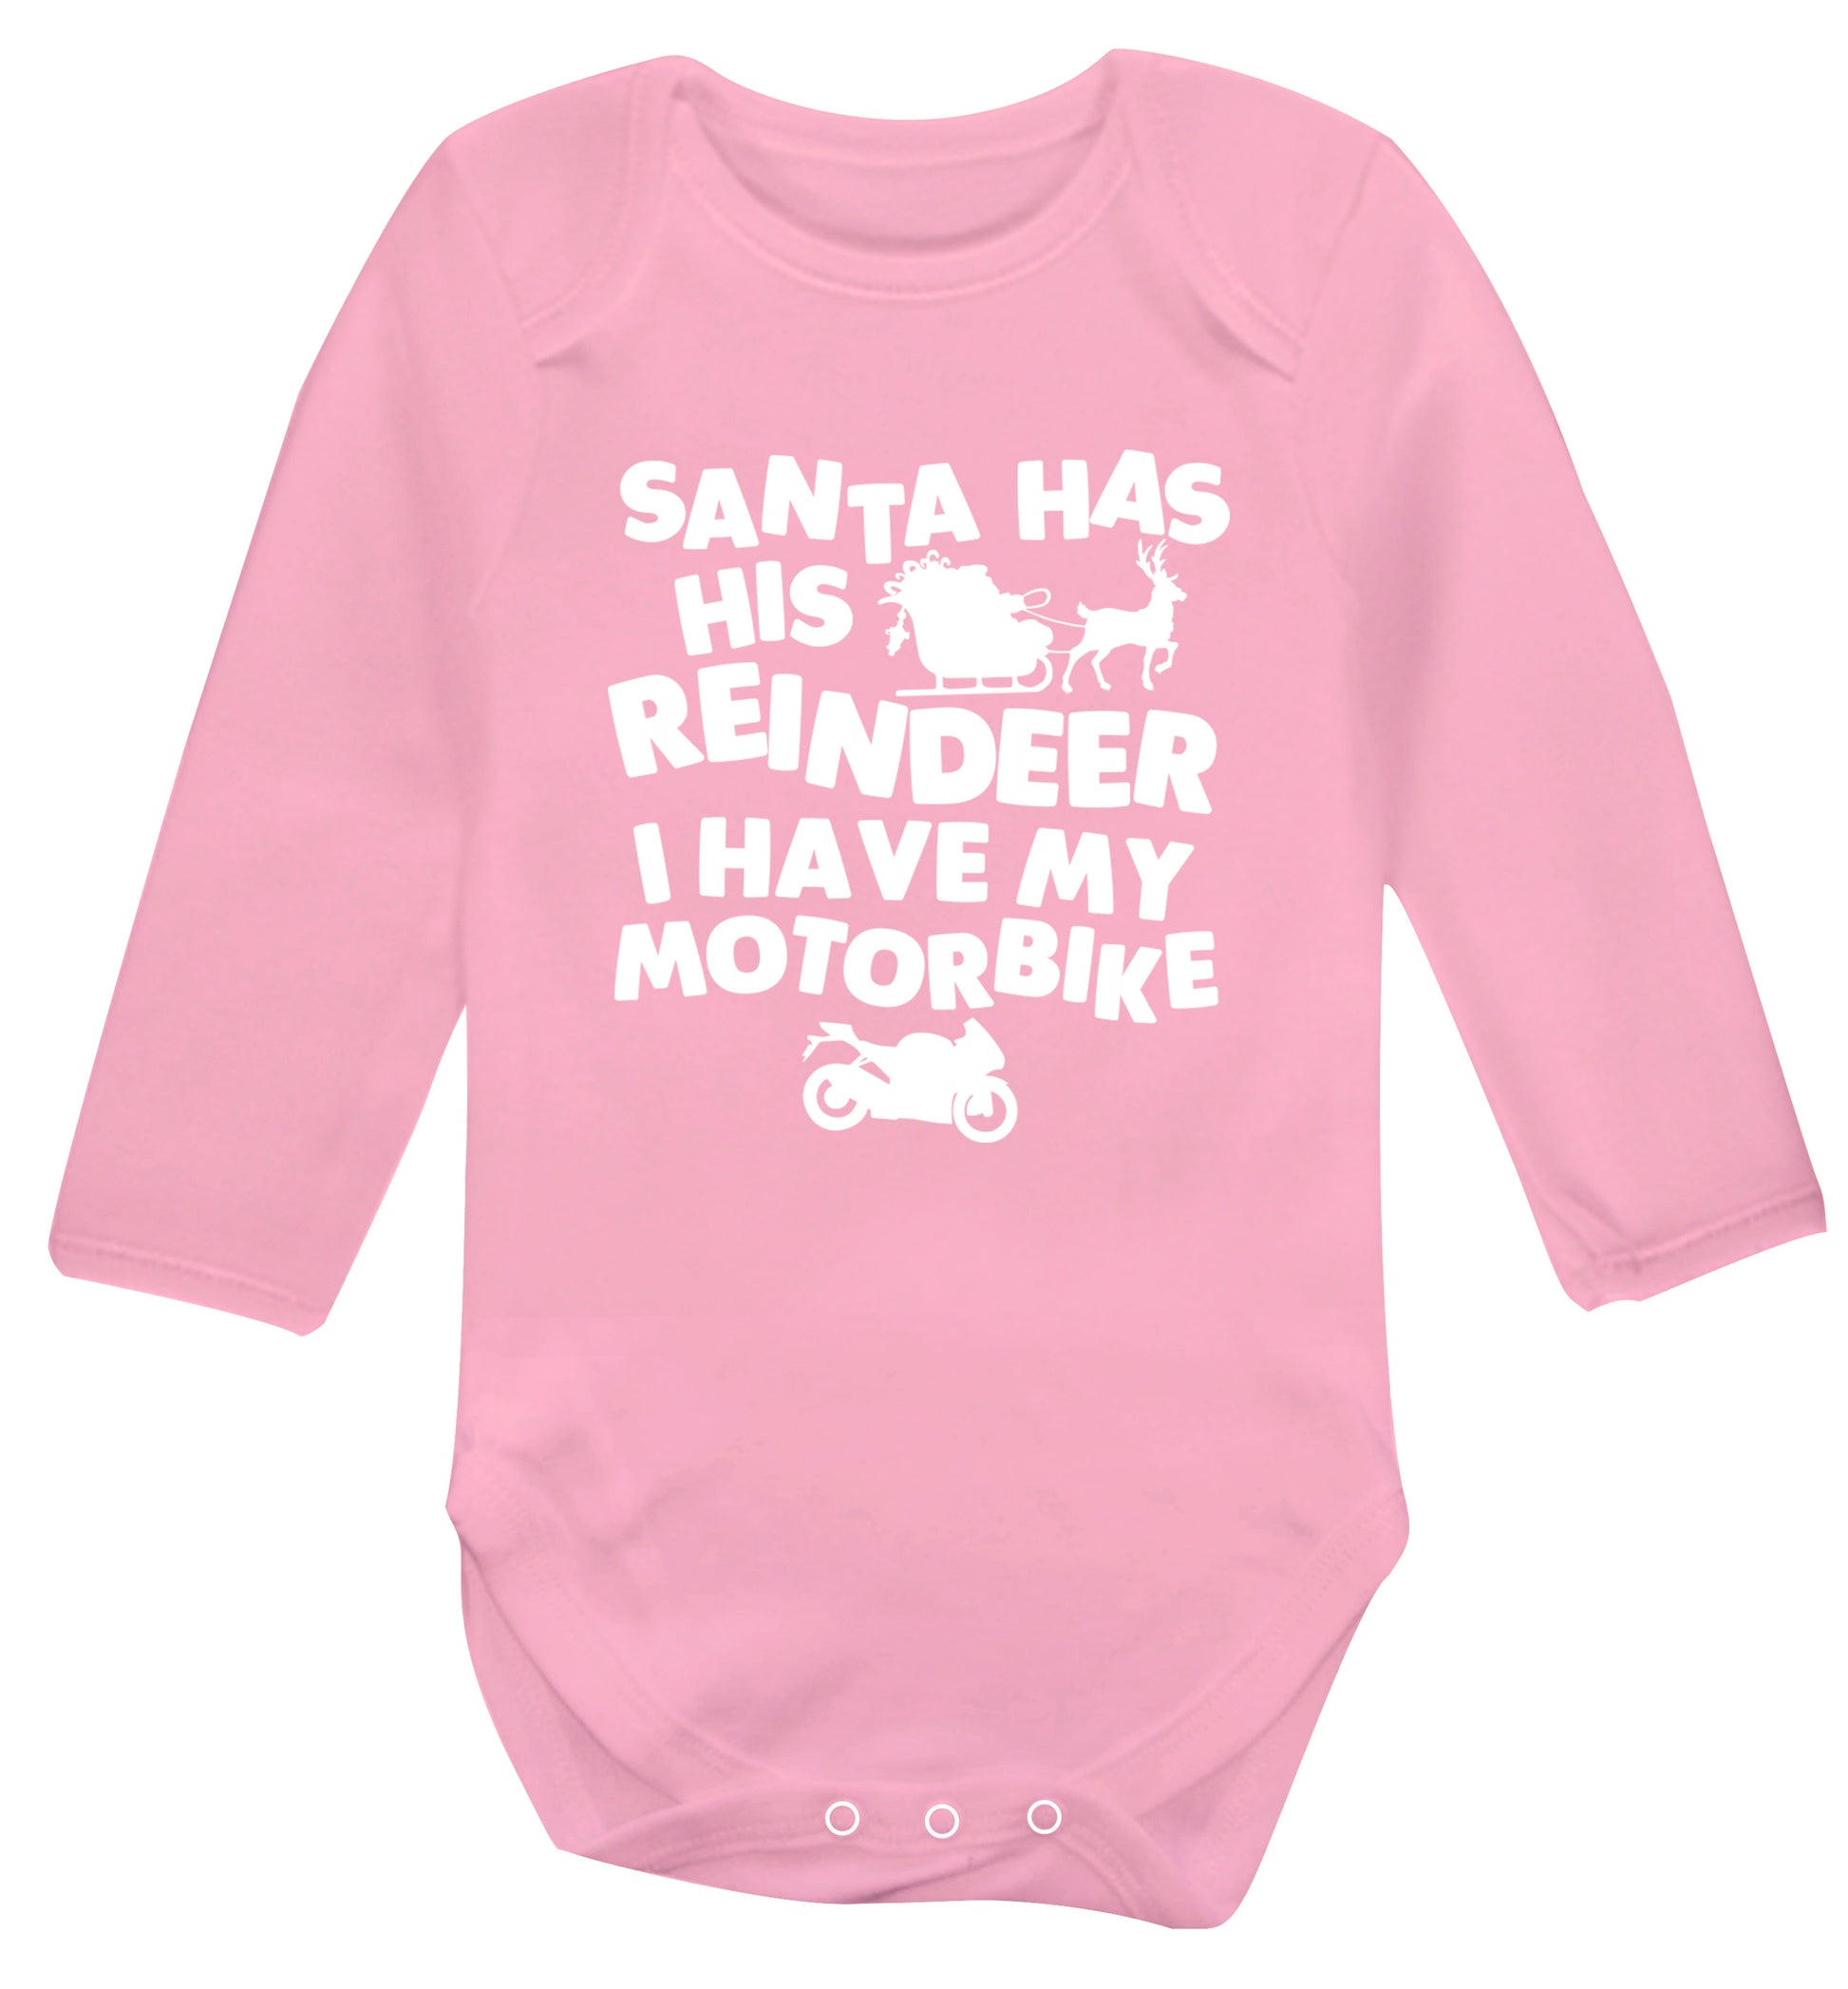 Santa has his reindeer I have my motorbike Baby Vest long sleeved pale pink 6-12 months